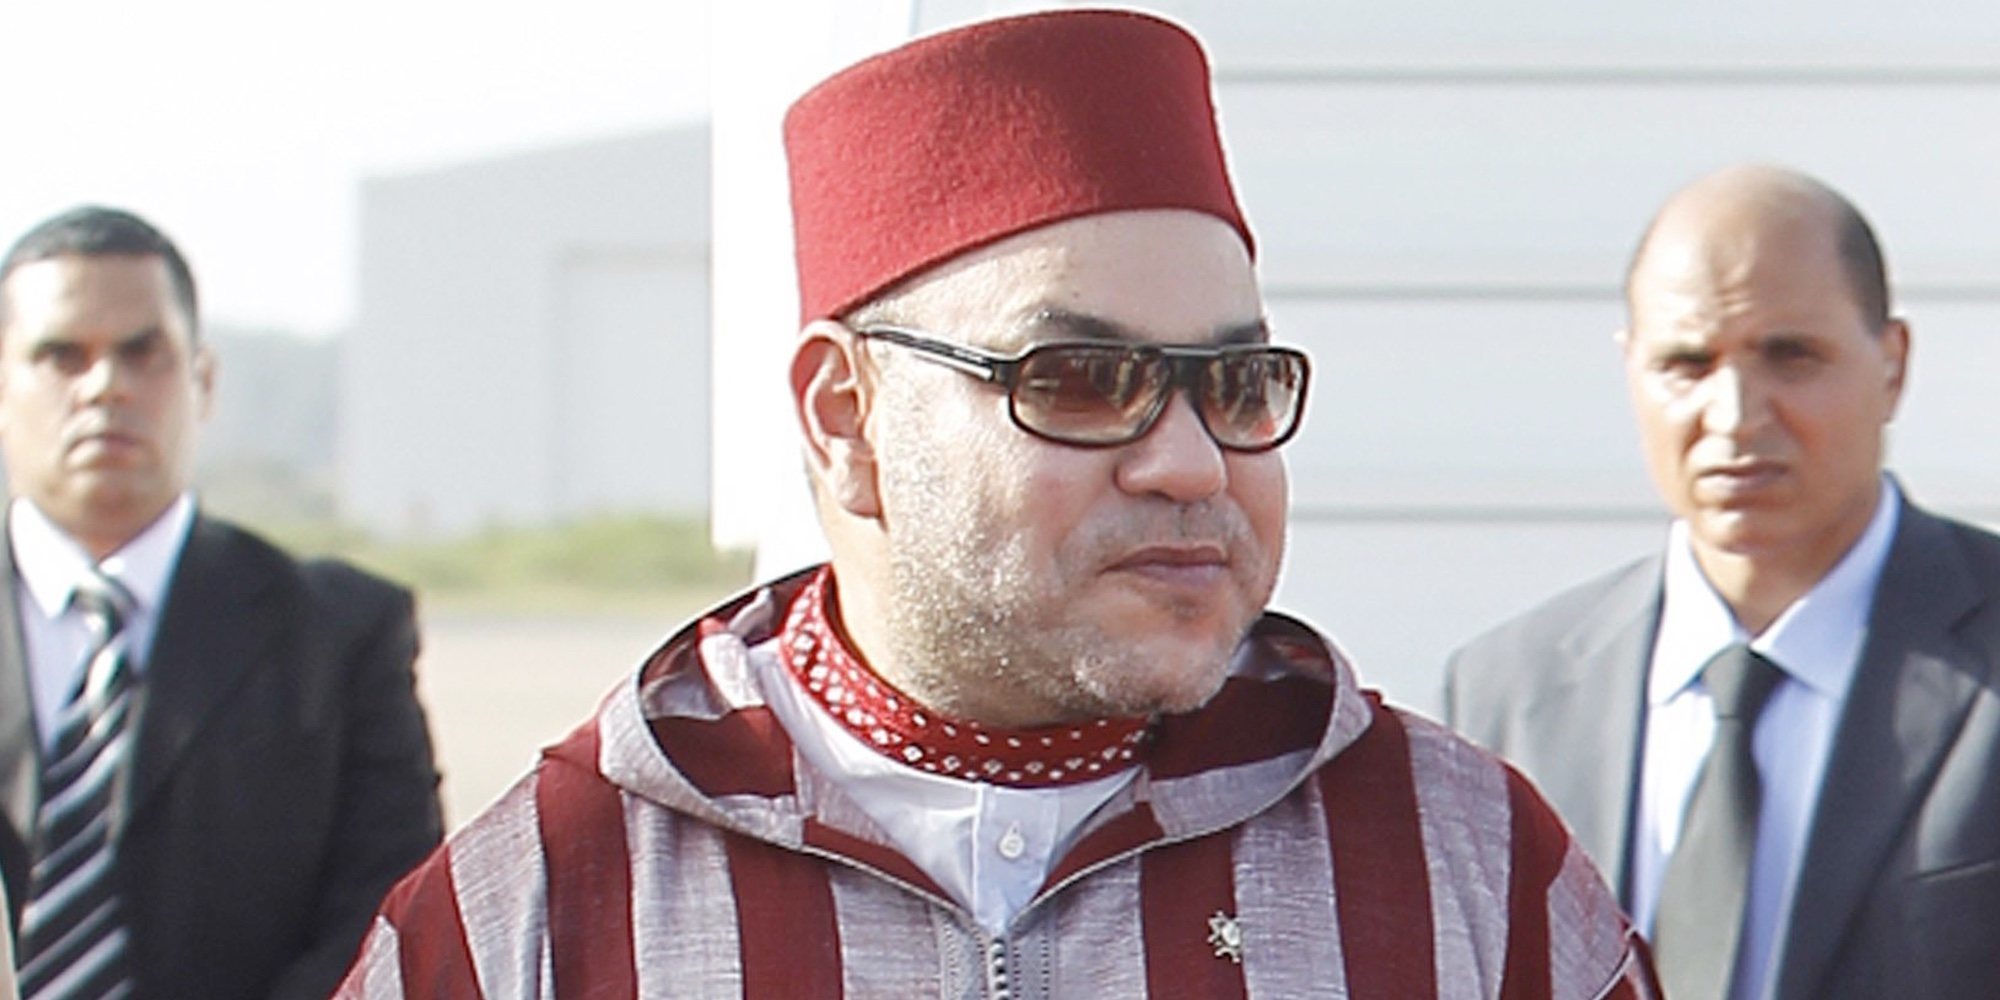 Mohamed VI de Marruecos sufre una enfermedad autoinmune